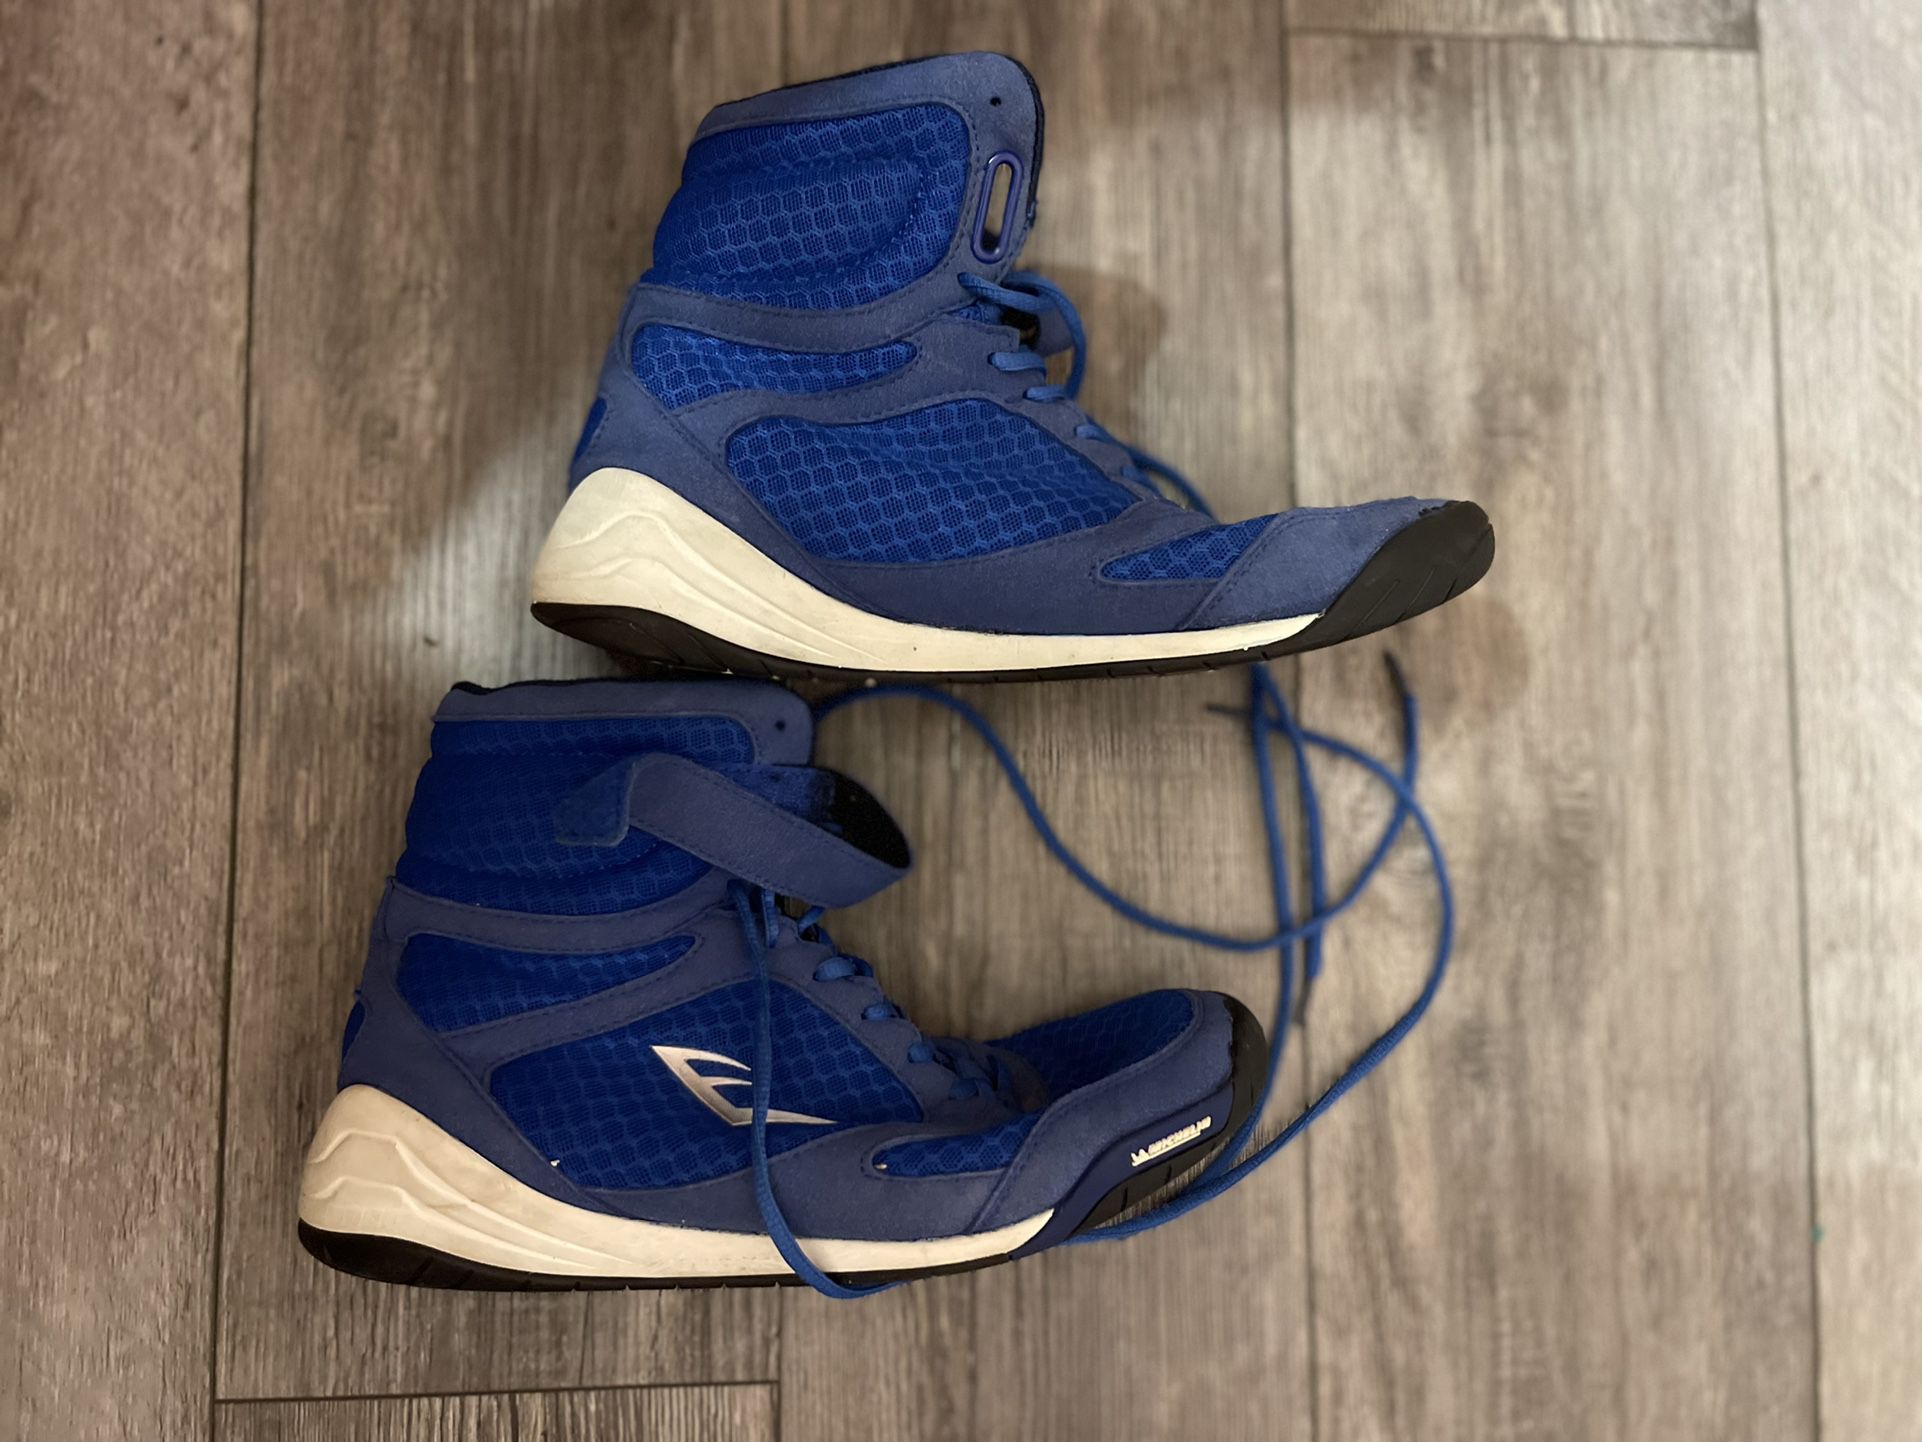 Men’s Everlast Boxing Shoes Size 10